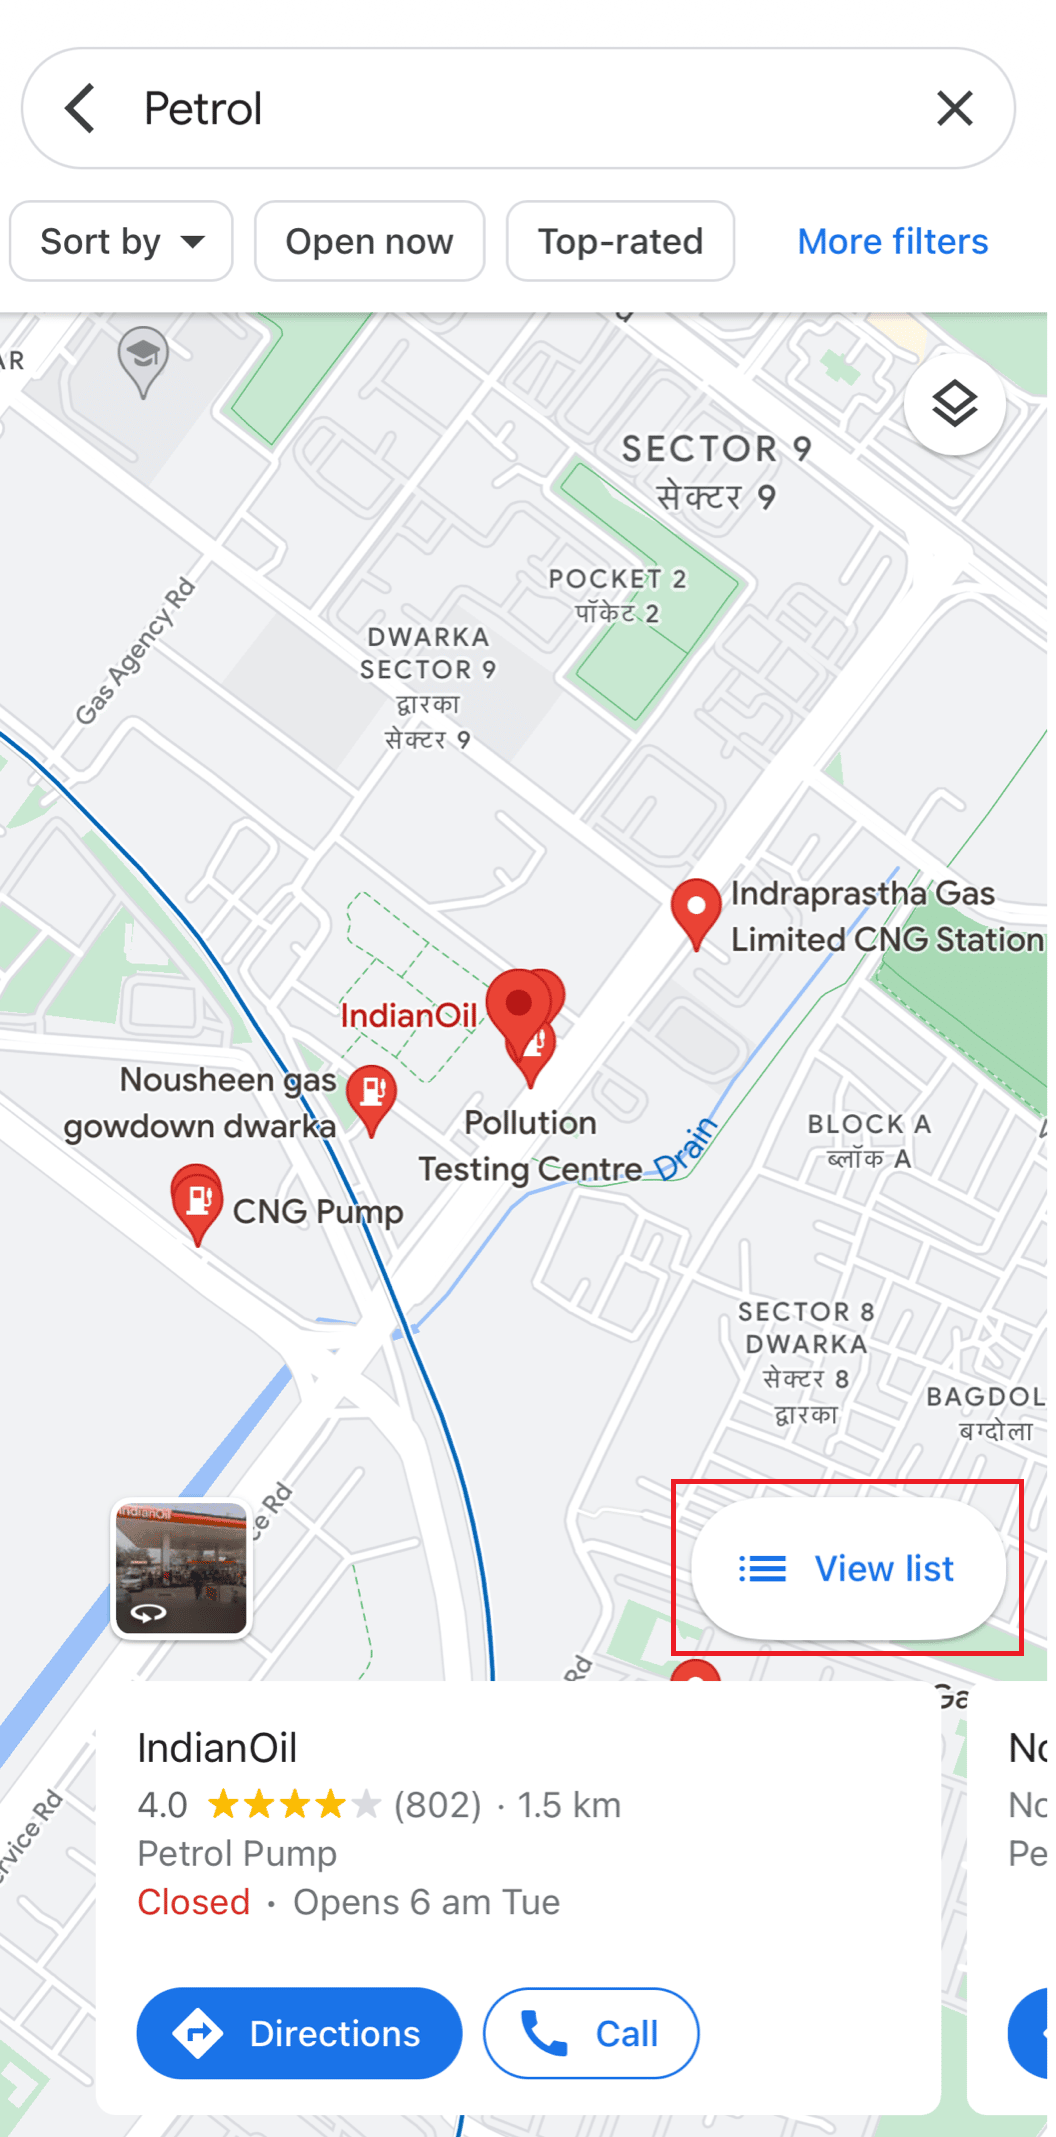 Ver lista Google Maps